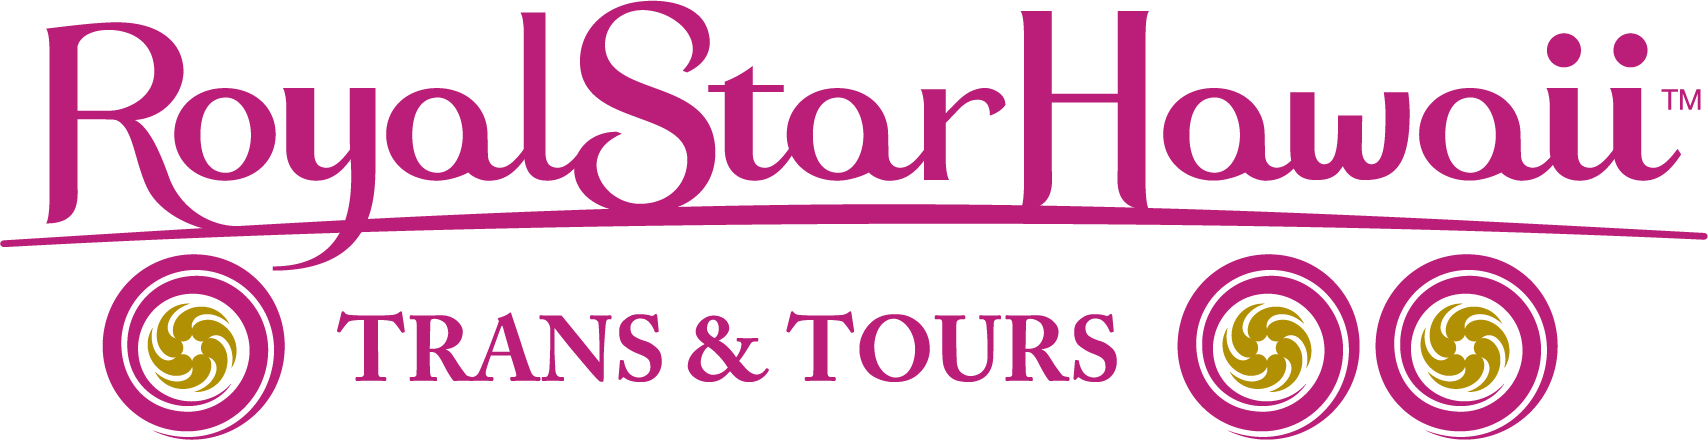 Logo_Royal_Star_Hawaii_Color